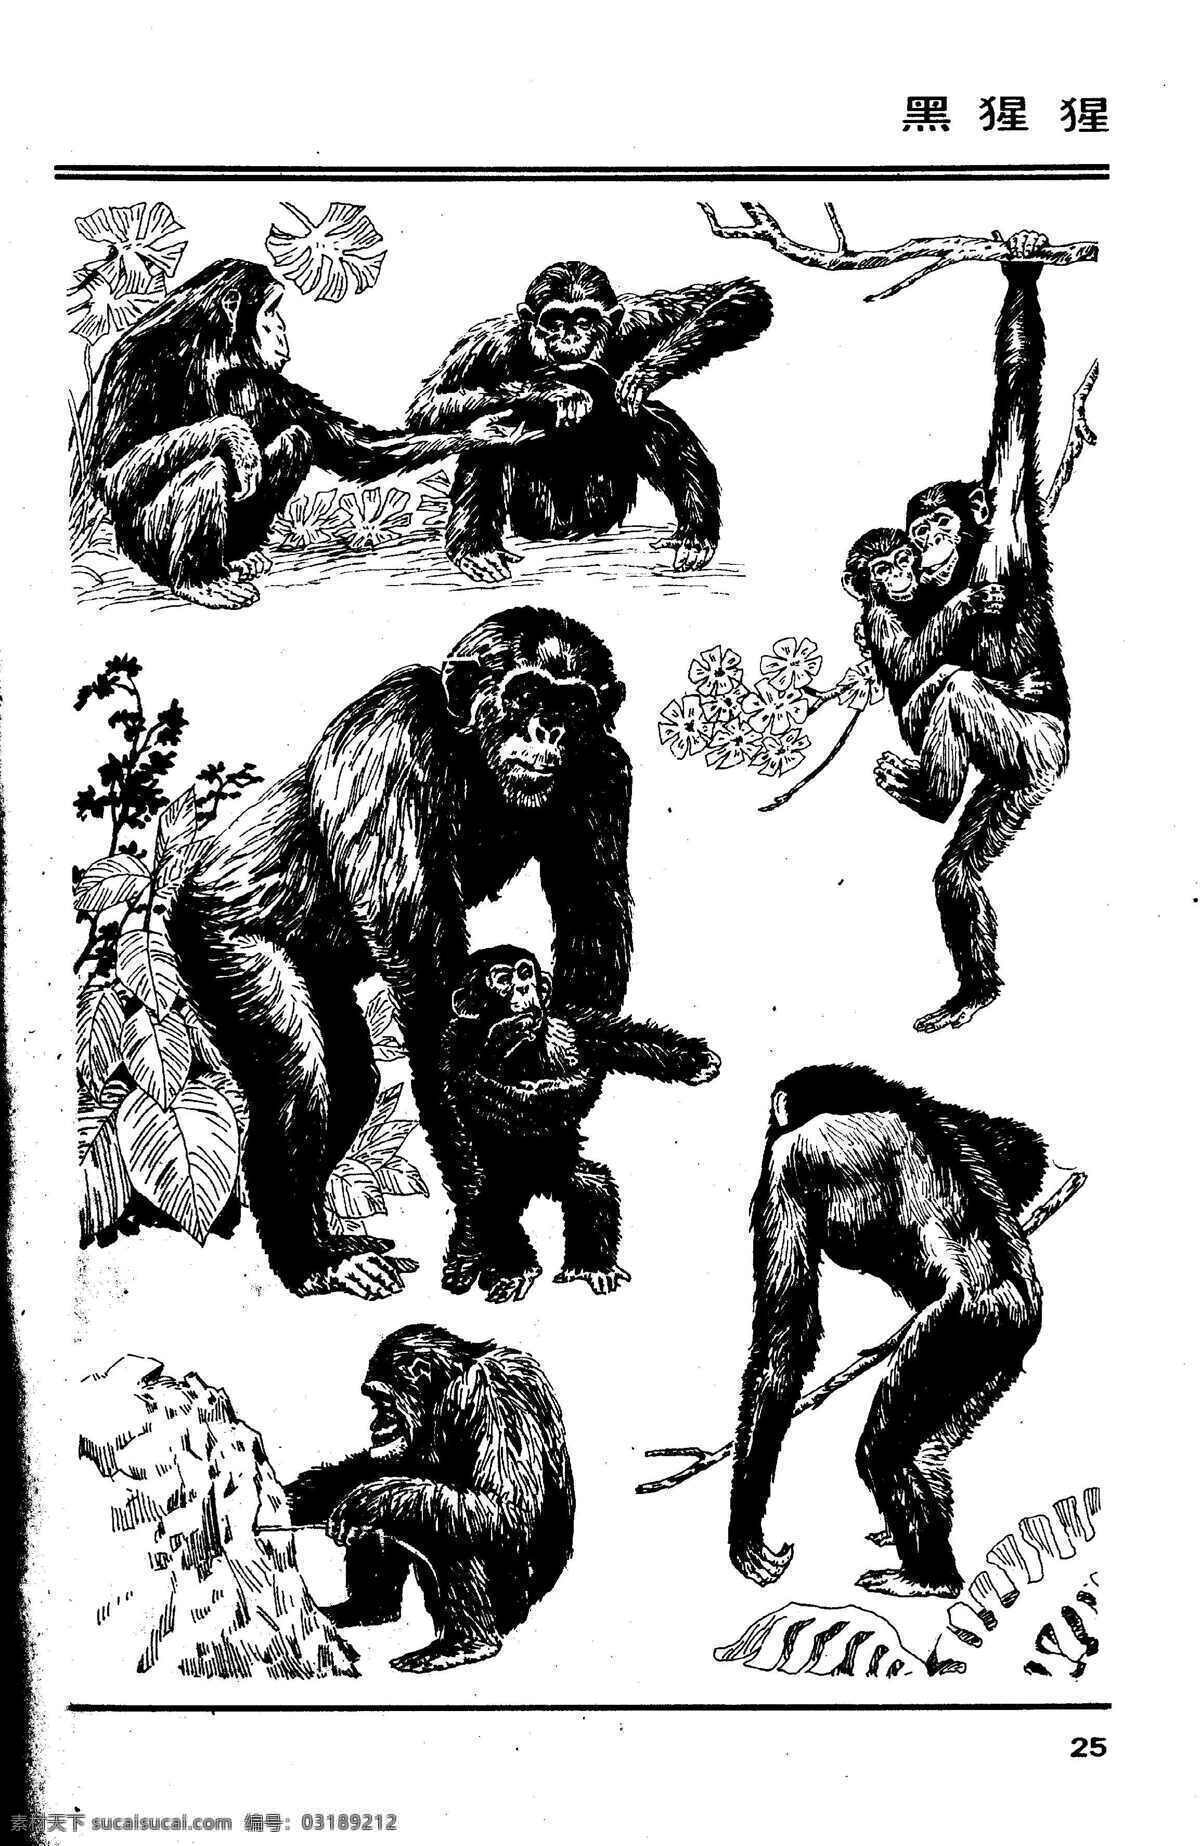 百兽图25 黑猩猩 百兽 兽 家禽 猛兽 动物 白描 线描 绘画 美术 禽兽 野生动物 猴 猴子 画兽谱 猩猩 生物世界 设计图库